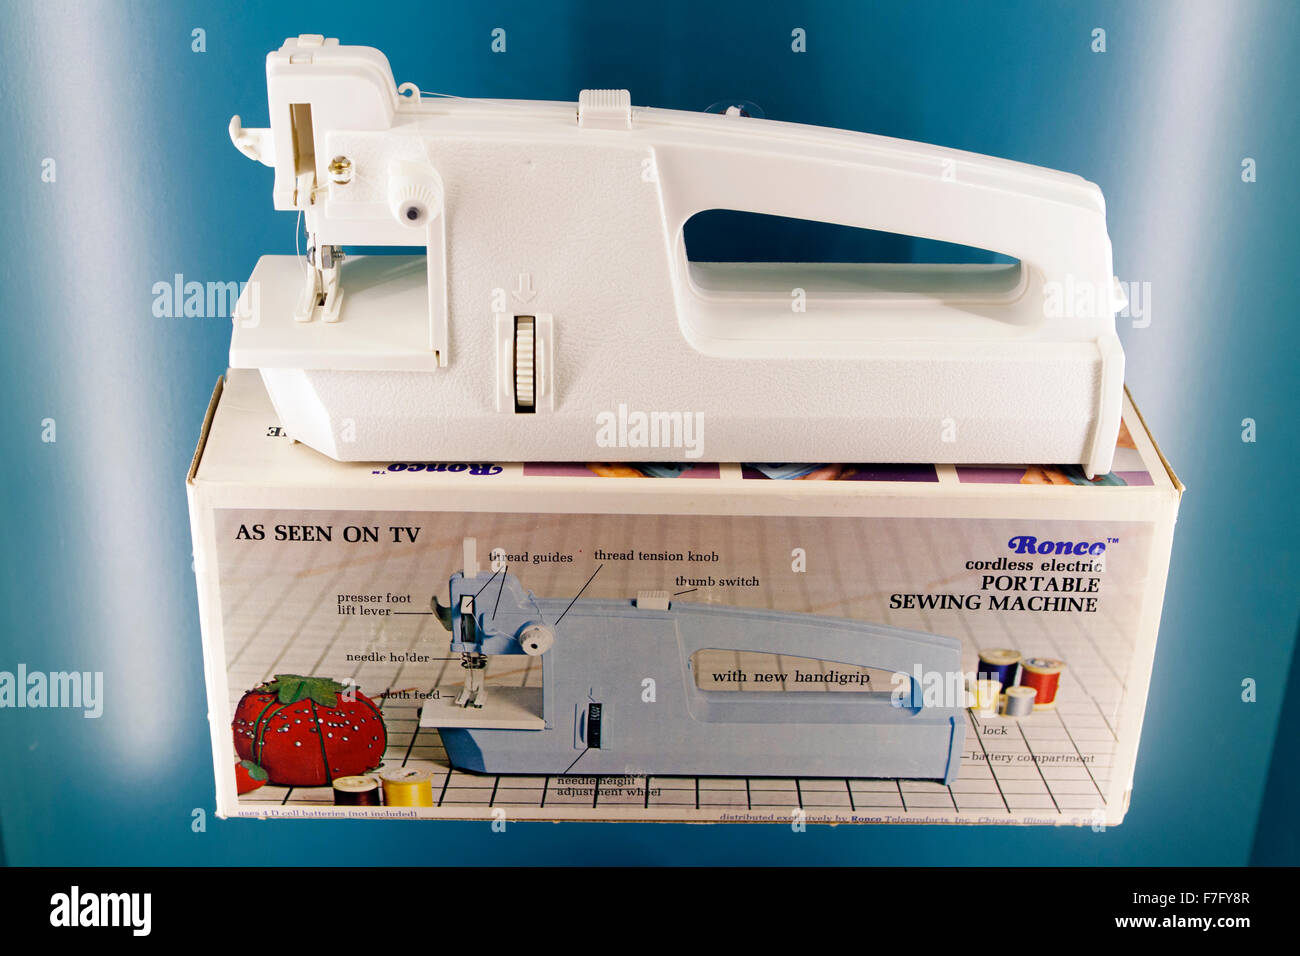 Ronco cordless portatile elettrico macchina da cucire, circa settanta Foto Stock